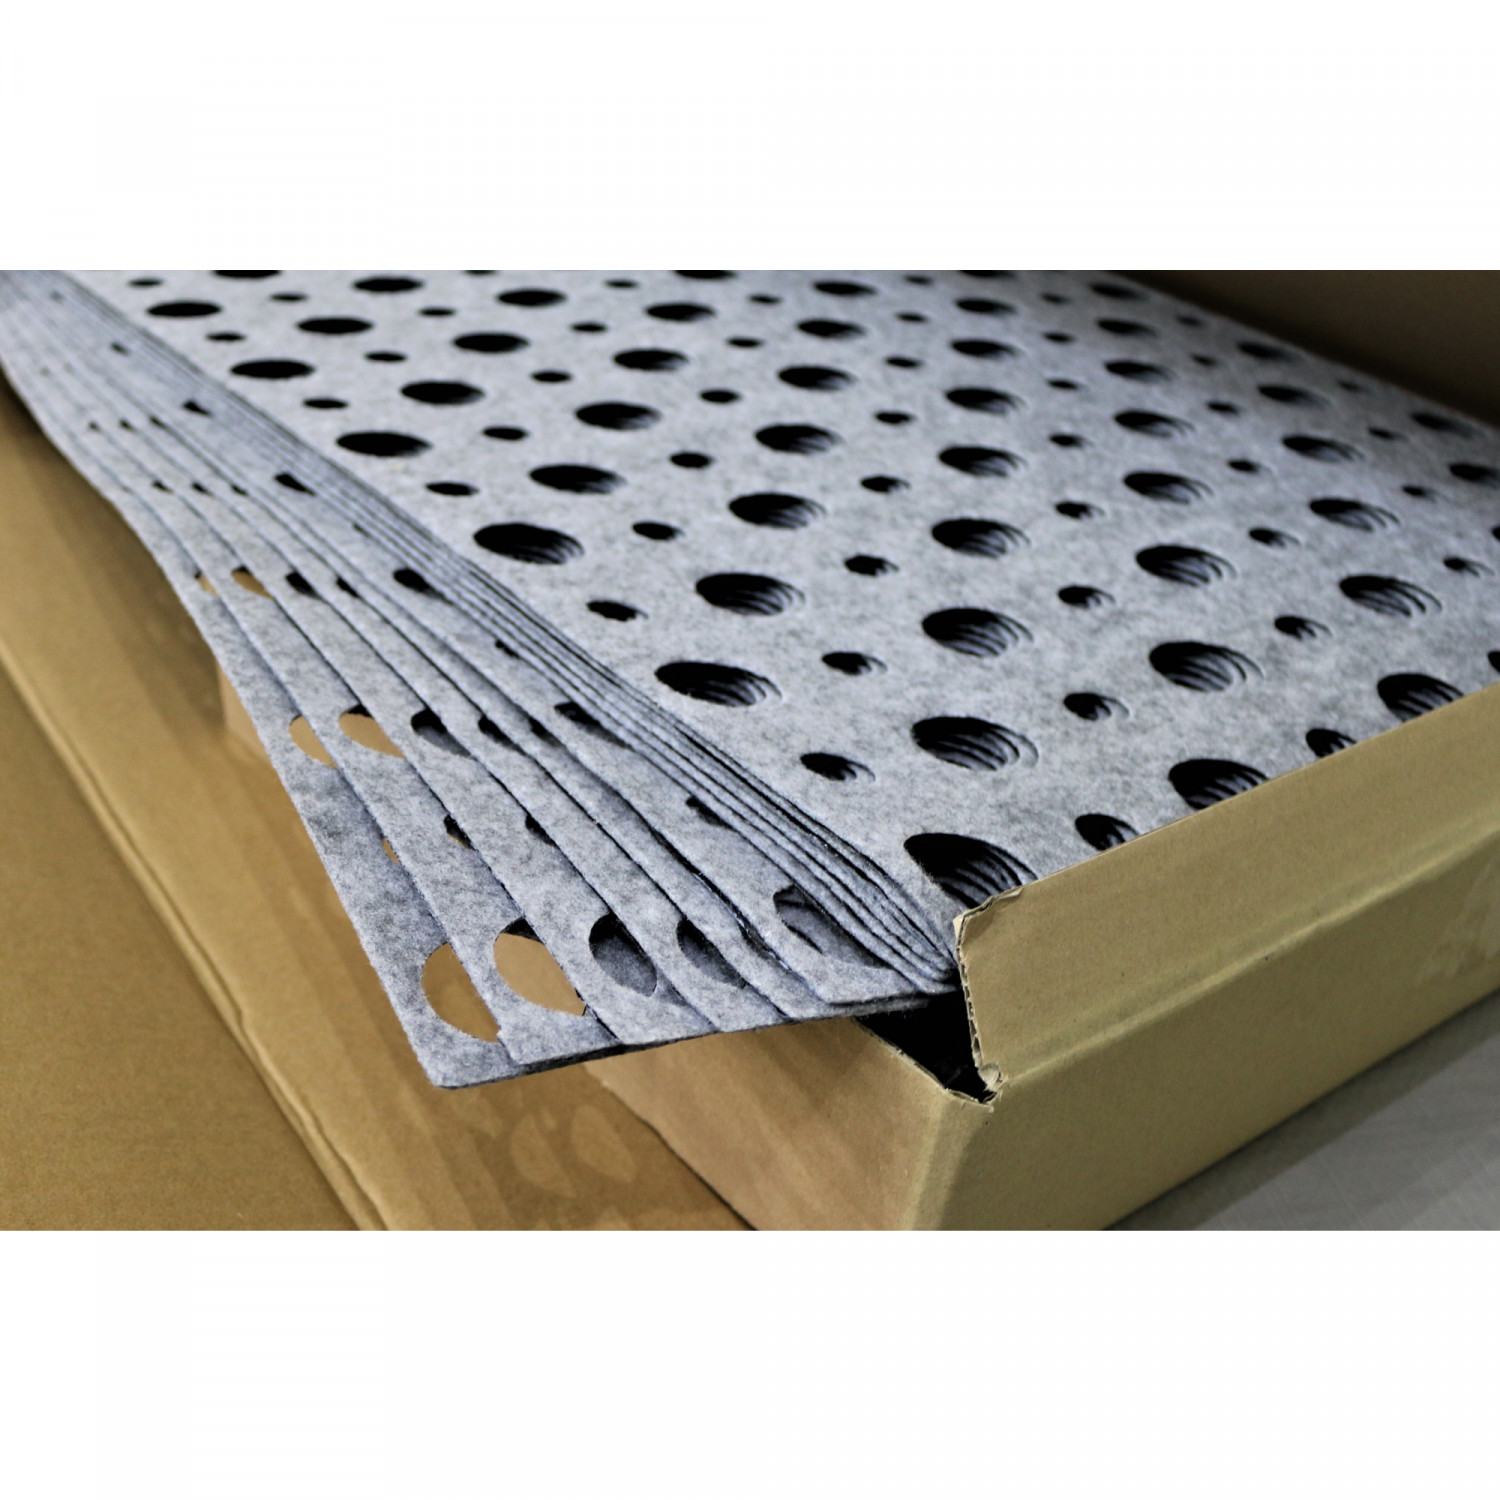 IT Klettplatte Flat gelocht selbstklebend, 20 Stk./Ktn. (0,5 m²/Stk.)